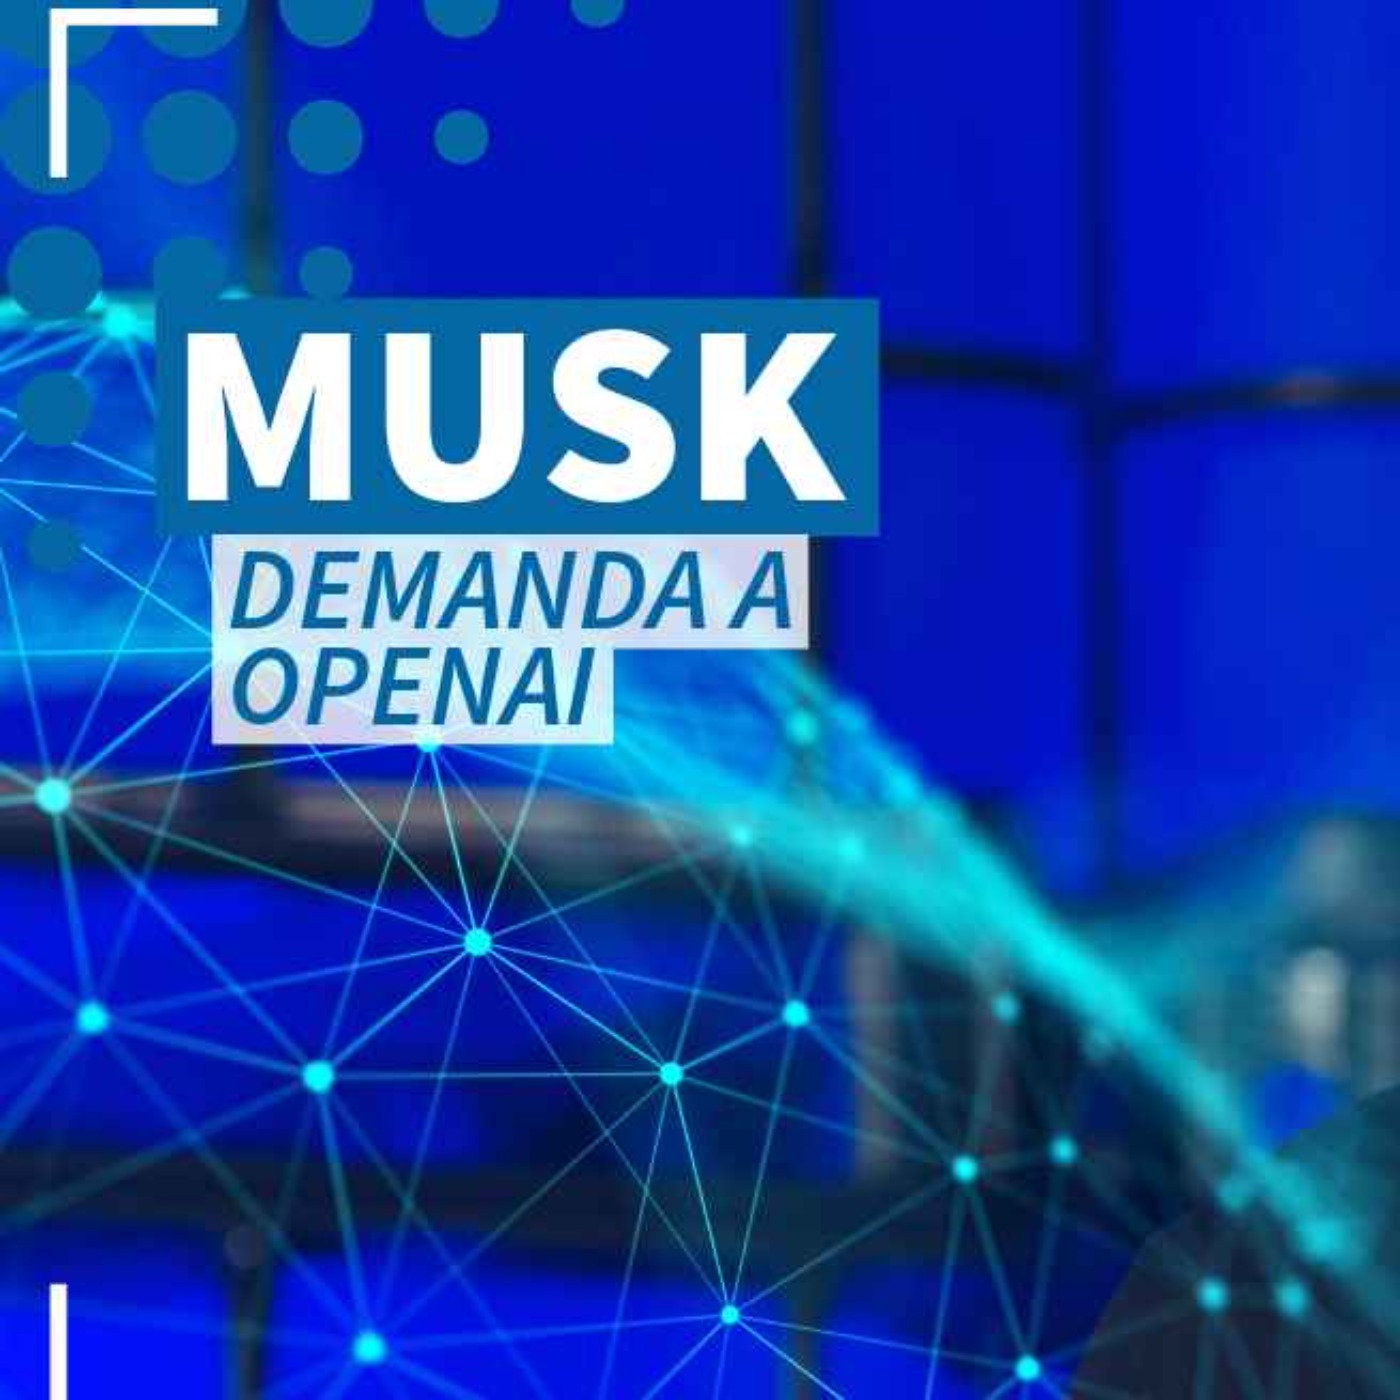 Musk demanda a OpenAI por violación de contrato - NTX 352